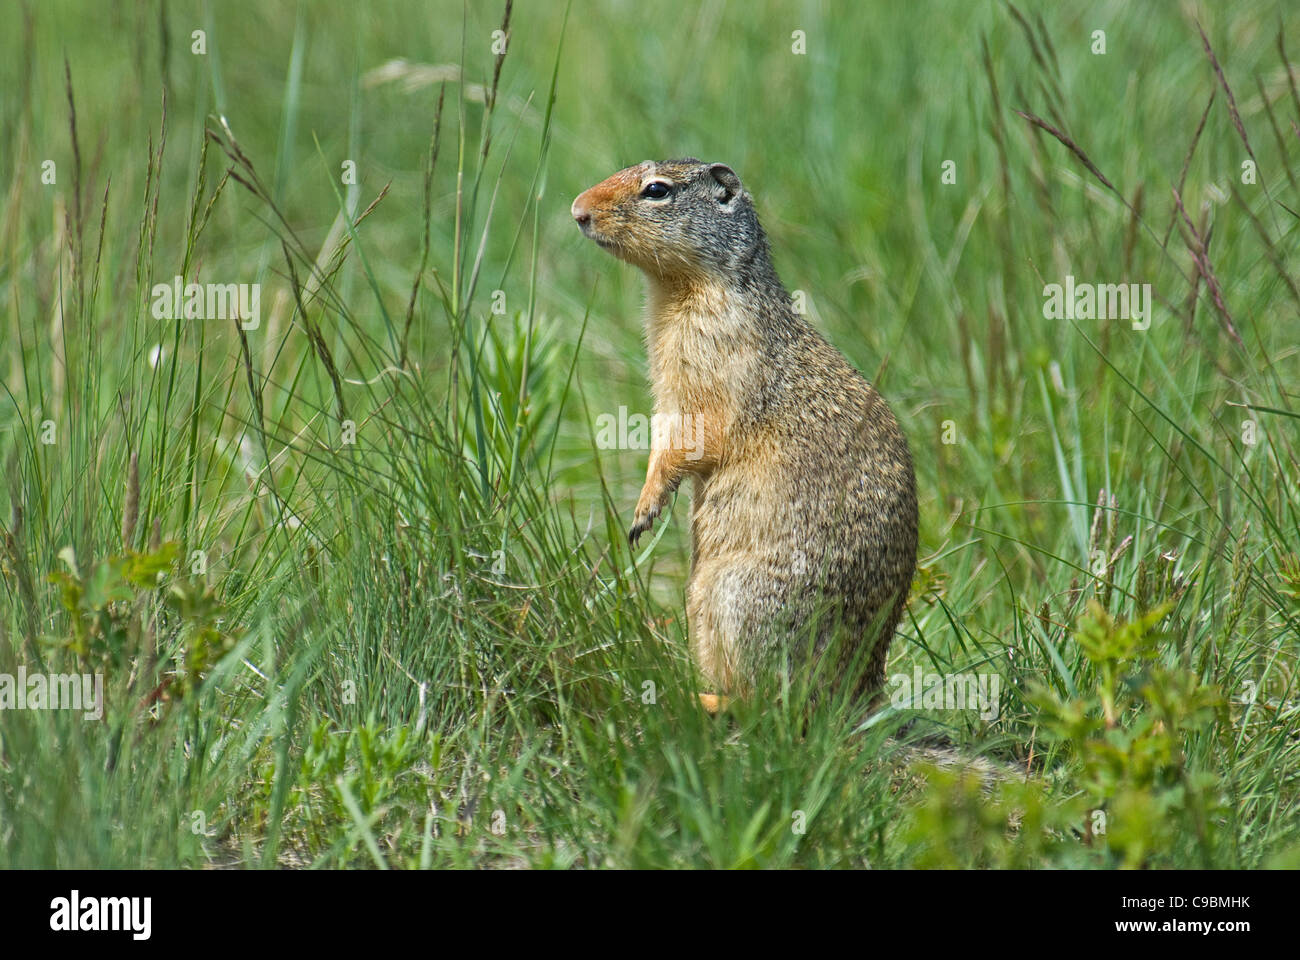 Canada, Alberta, Parco Nazionale dei laghi di Waterton, terra colombiana scoiattolo Spermophilus columbianus in erba in piedi sulle zampe posteriori Foto Stock